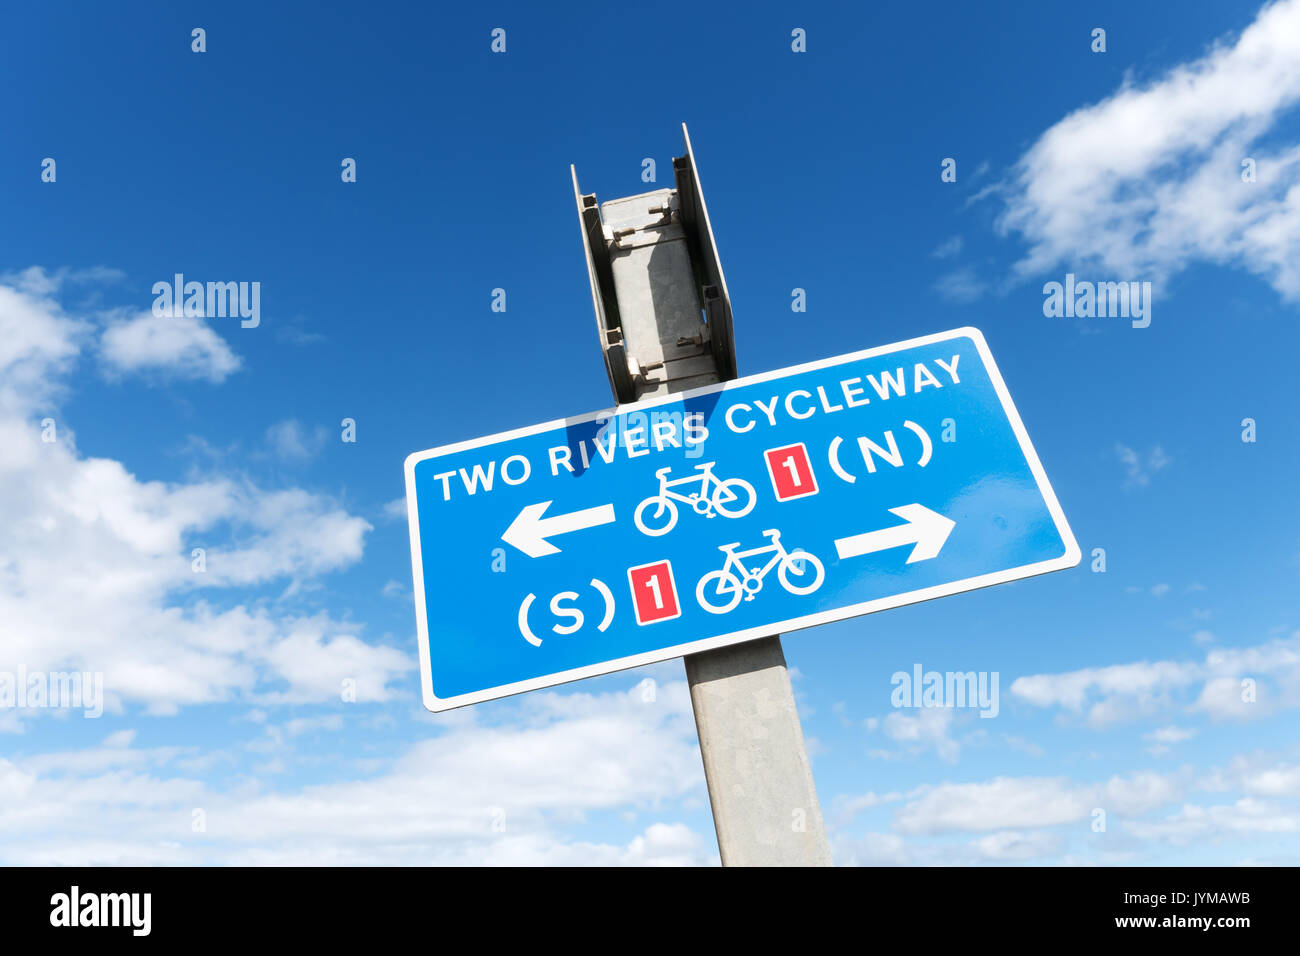 Zwei Flüsse (Tyne und Wear) cycleway unterzeichnen, Whitburn, North East England, Großbritannien Stockfoto